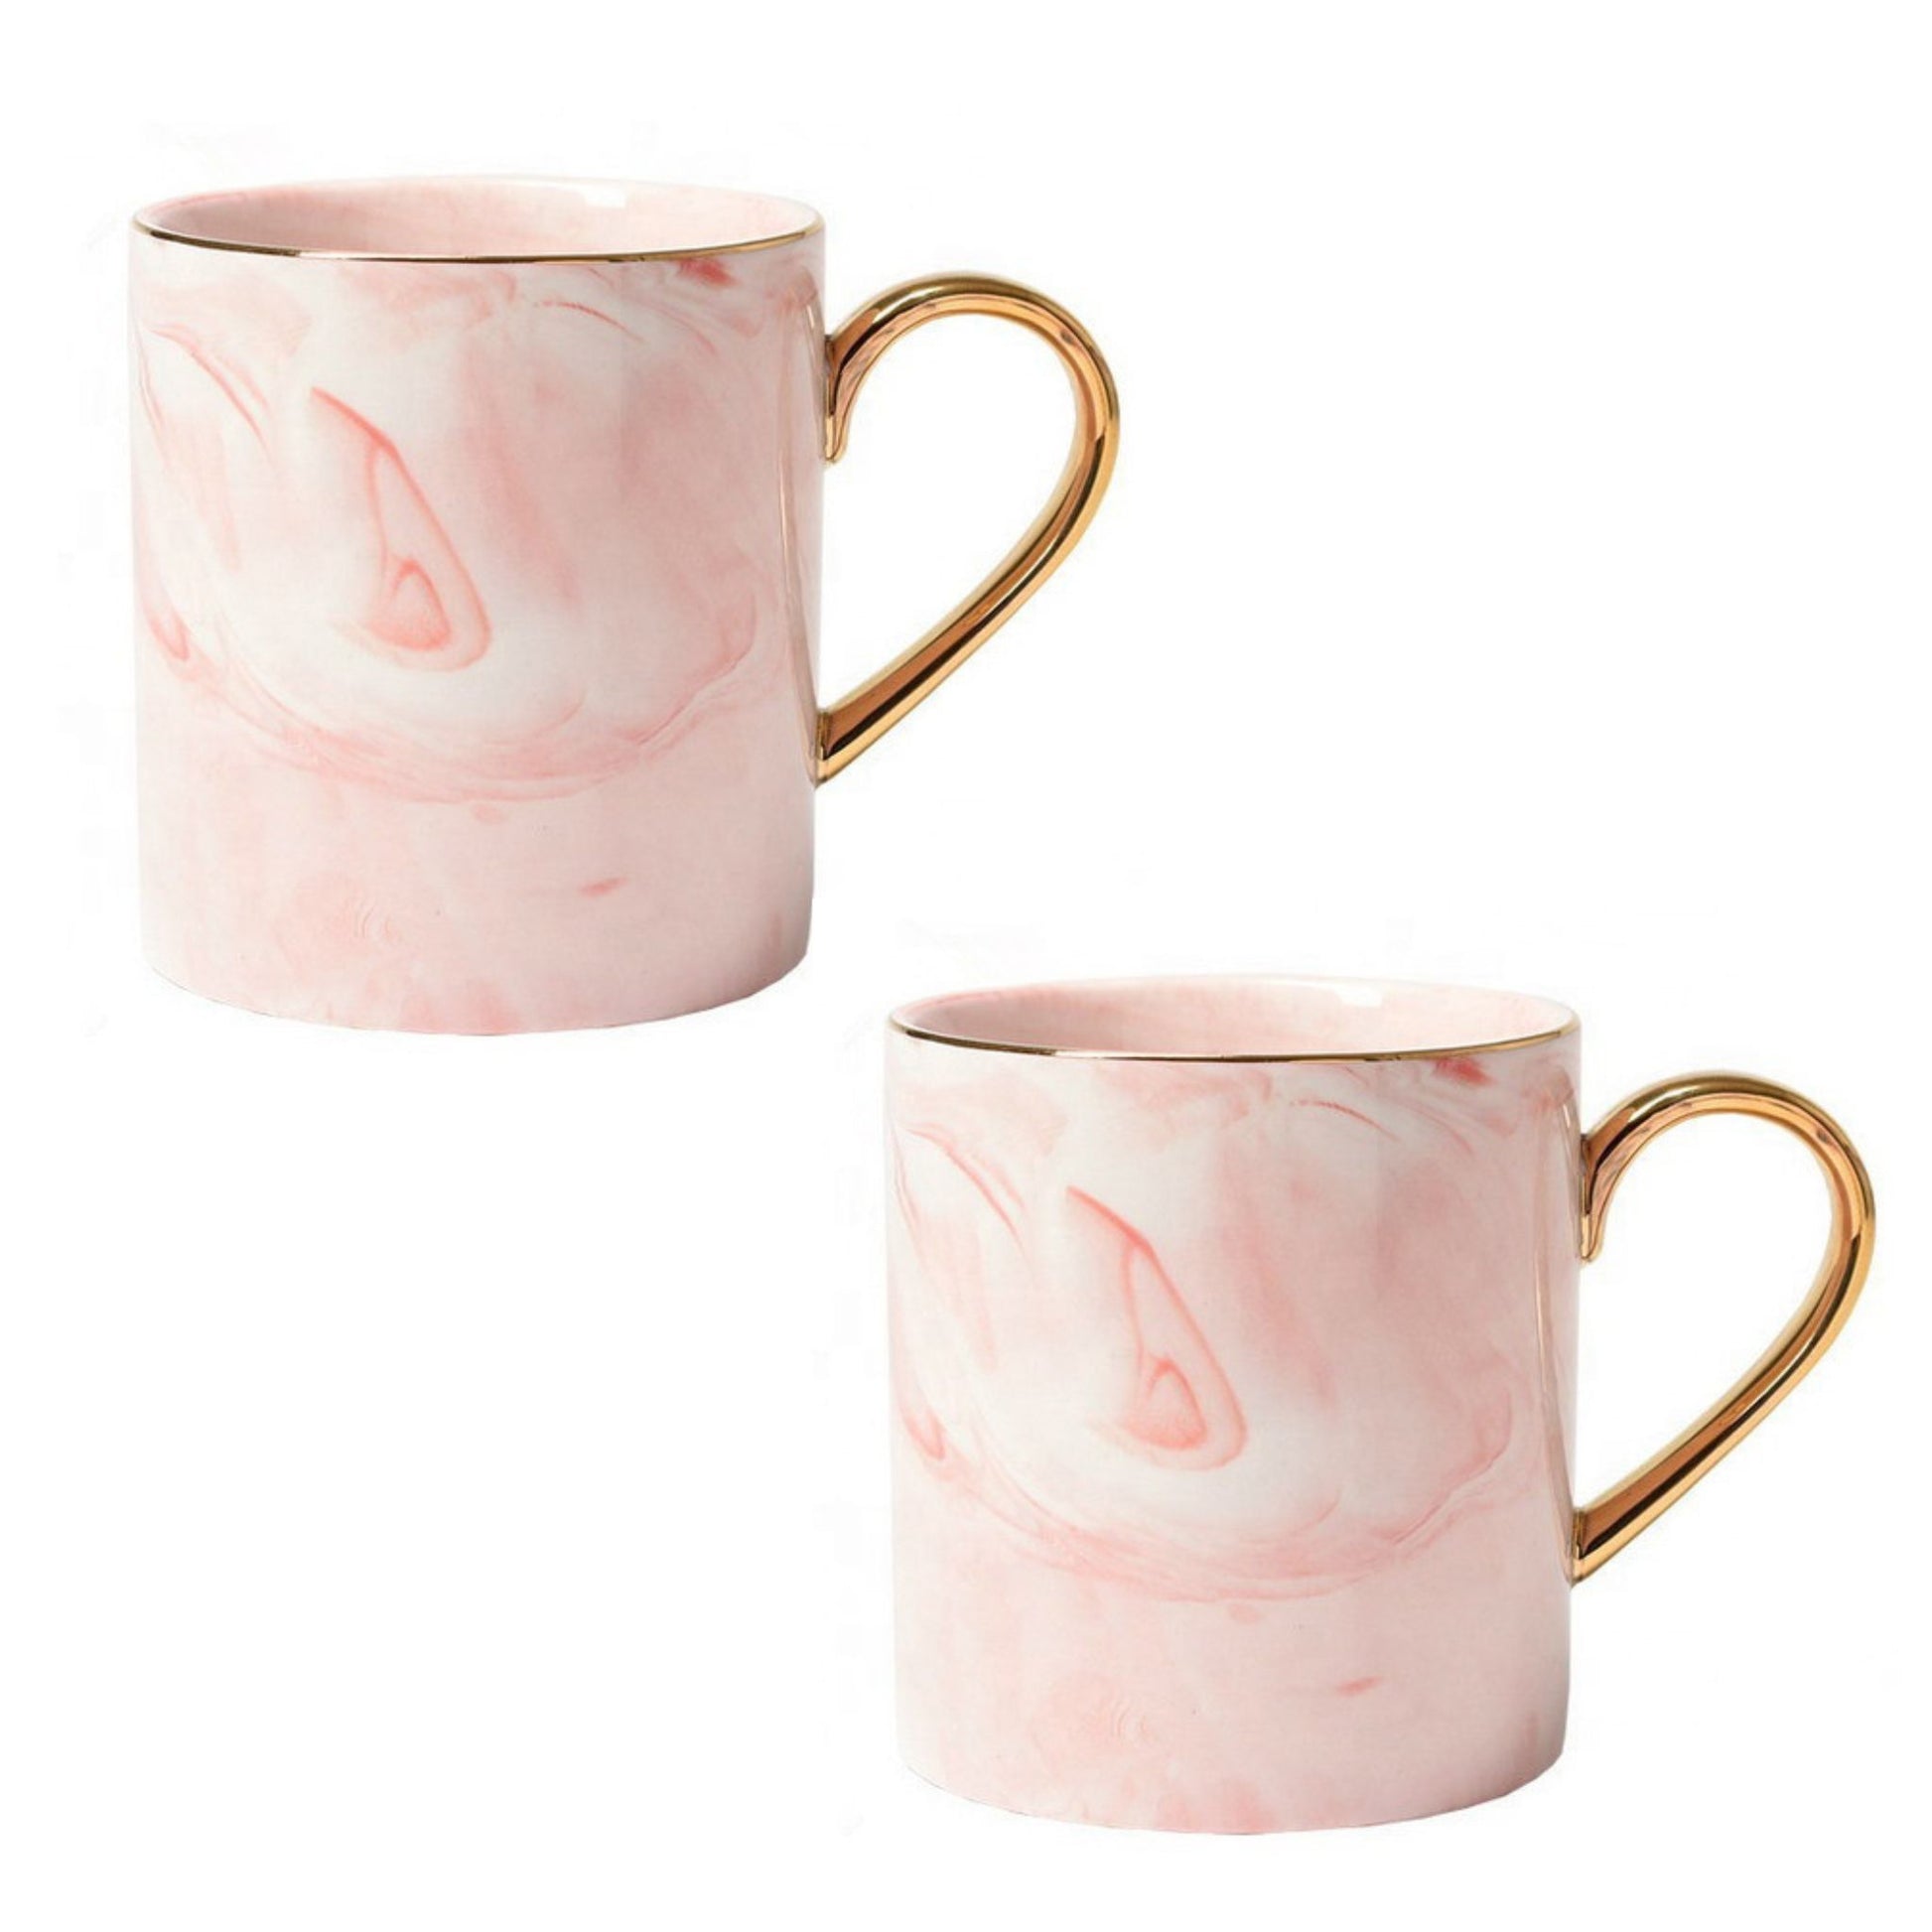 Rosa Marmor Tasse Goldener Henkel Schöne Tassen zum Verschenken Luxus Tassen Set Schönes Marmor Geschirr Luxus Geschirr mit Gold 2er Set